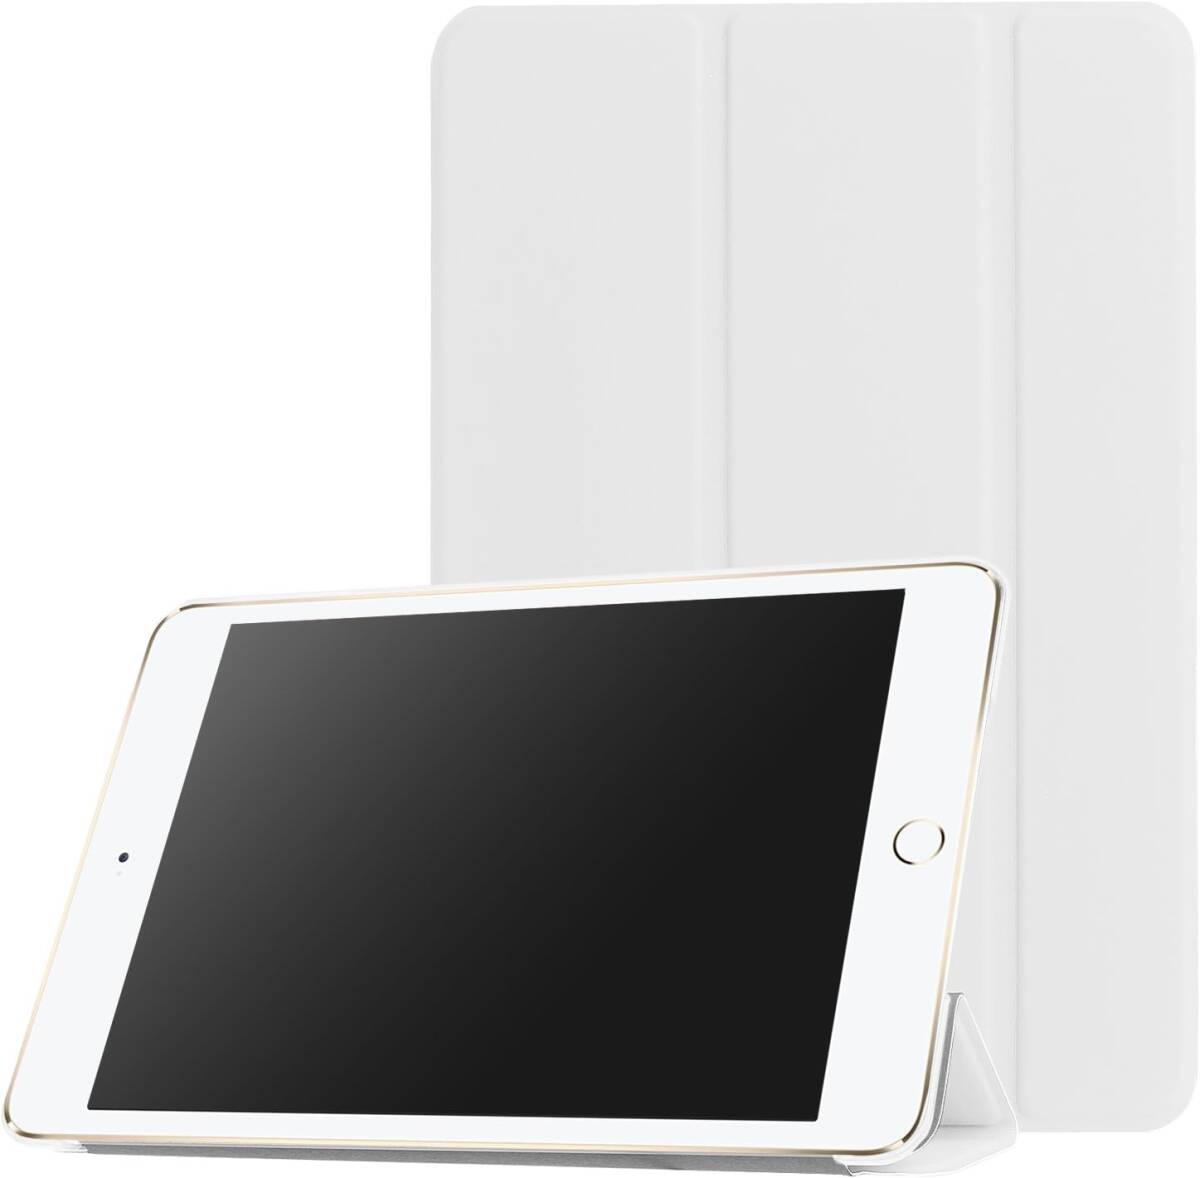 iPad mini 1/2/3 用 PU レザーカバー +ハードケース 超薄 軽量型 スタンド機能 スマートカバー ケース 三つ折 ホワイト 白_画像4